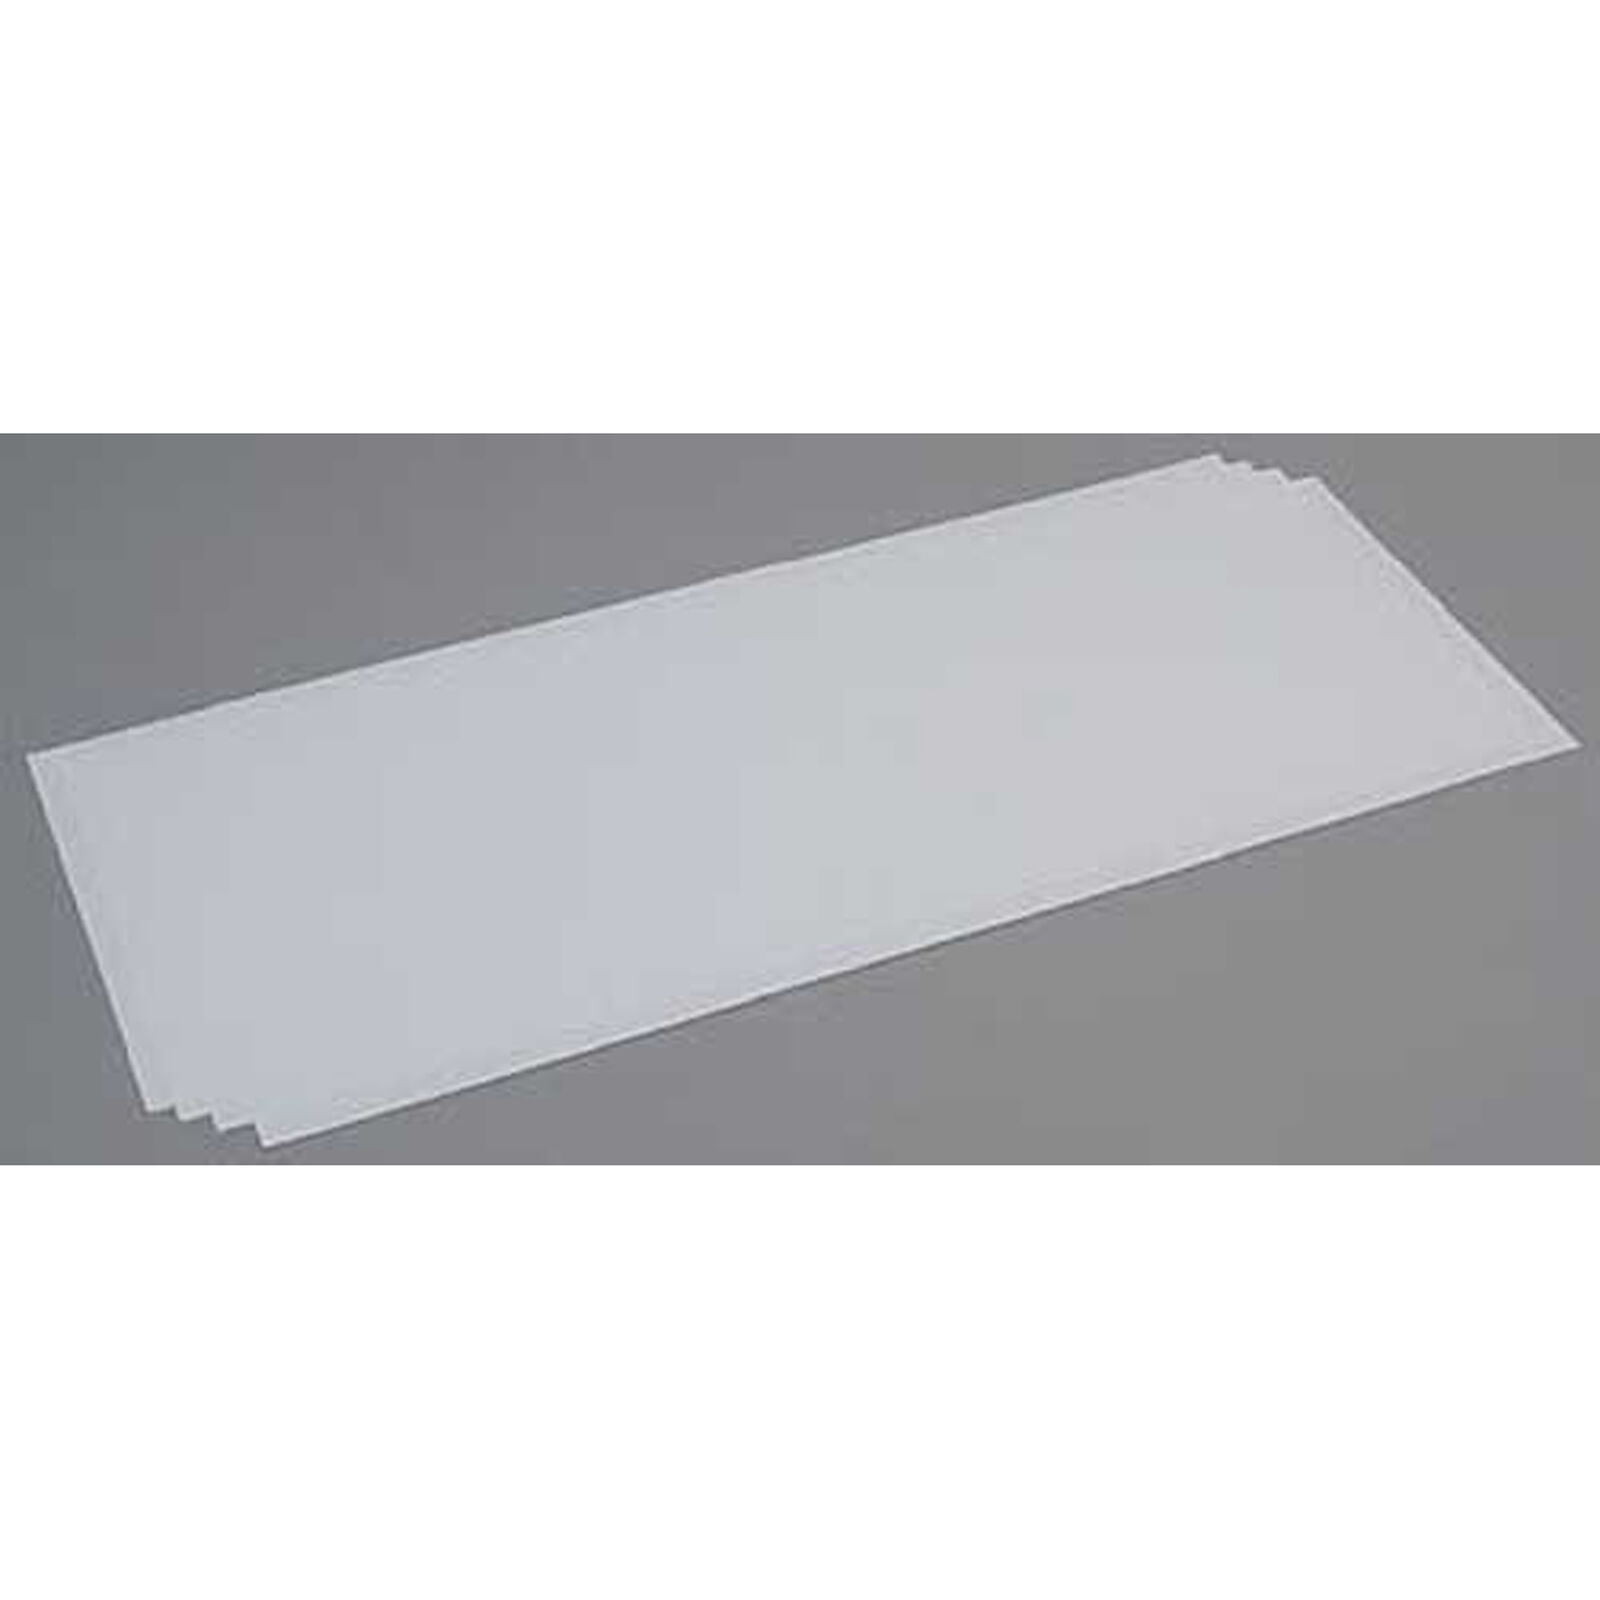 White Sheet .030 x 8 x 21 (4)